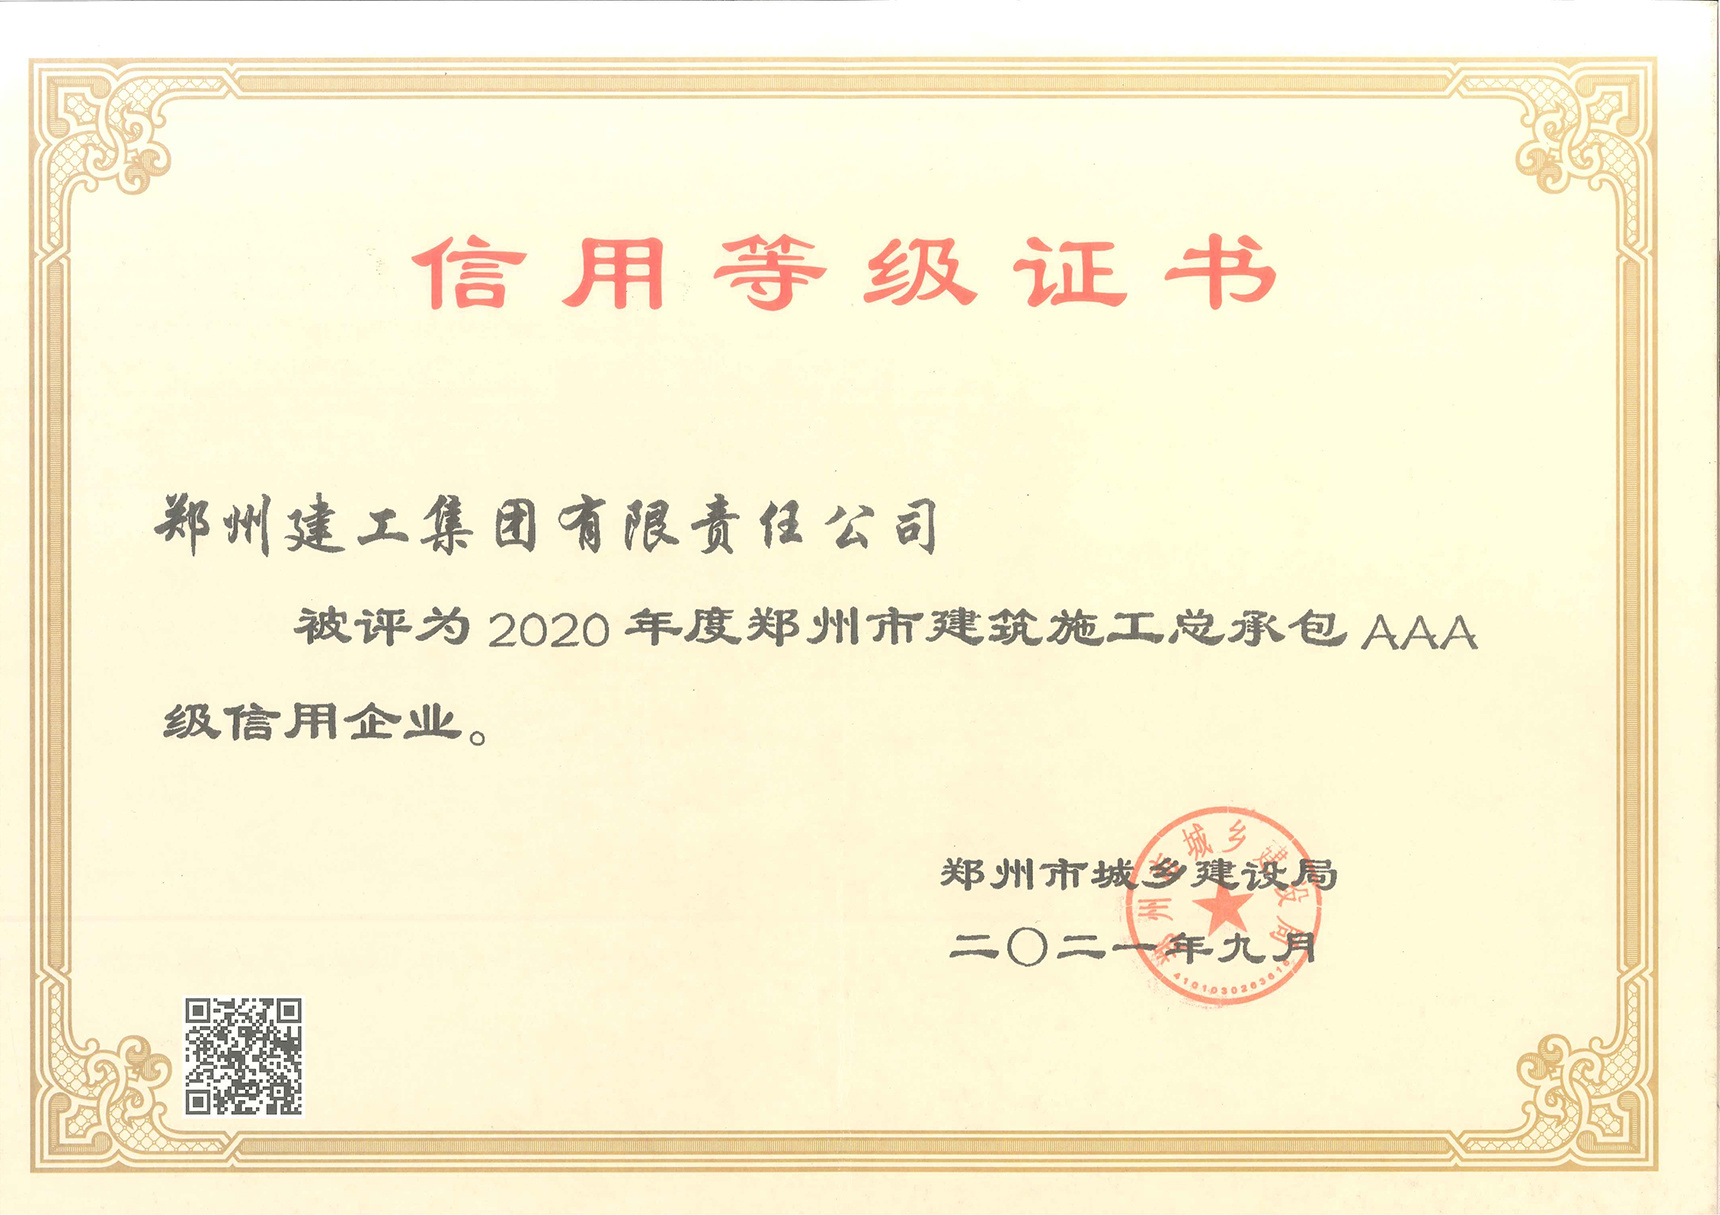 2020年度郑州市建筑施工总承包AAA级信用企业